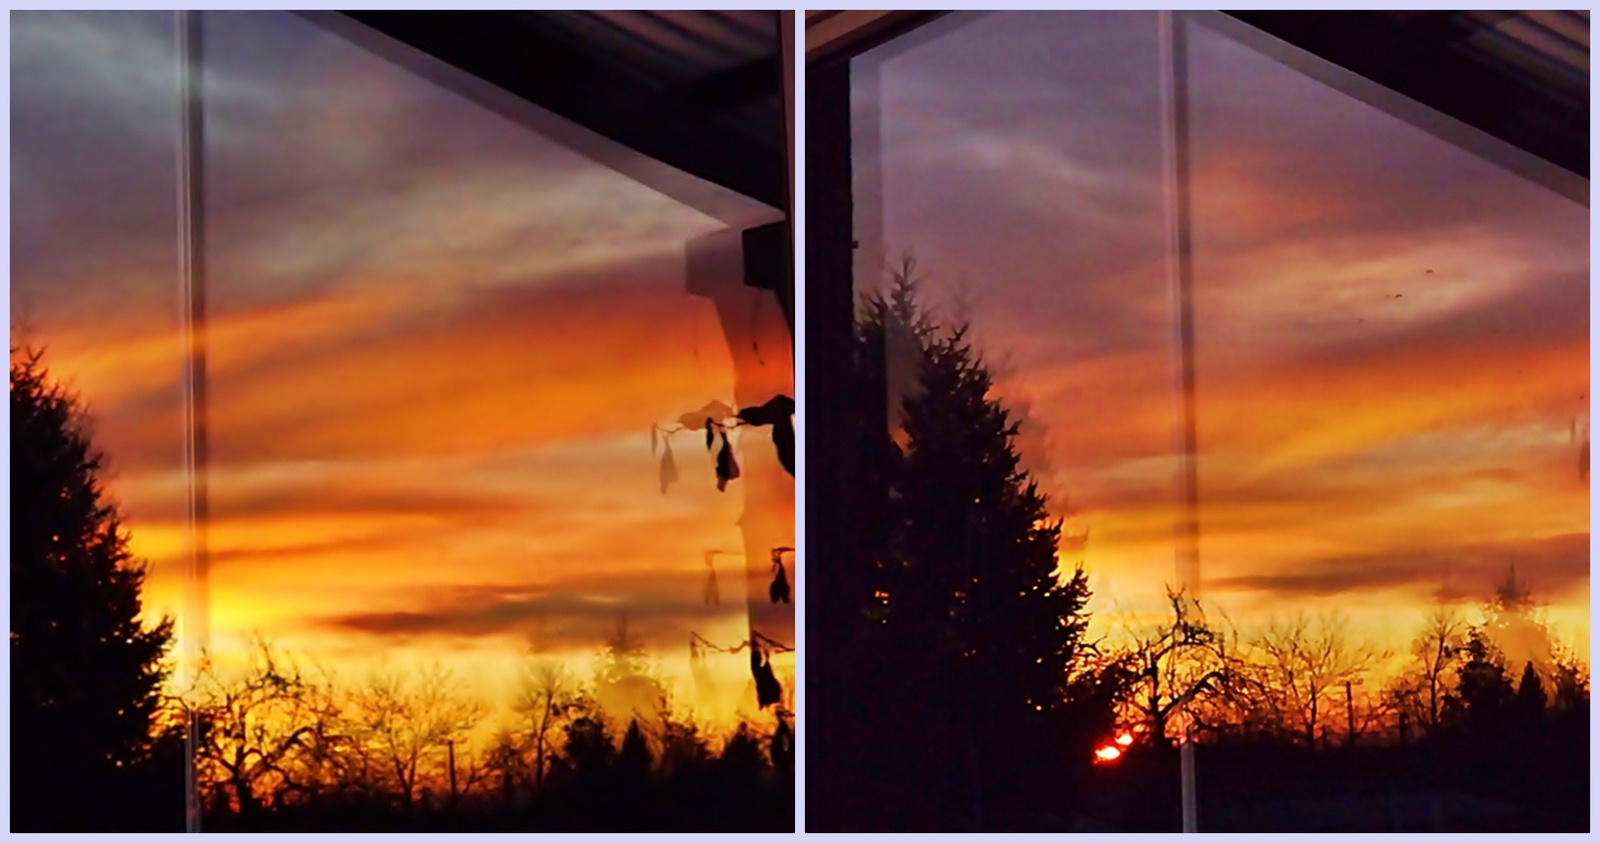 ablakomban kel a nap ;))